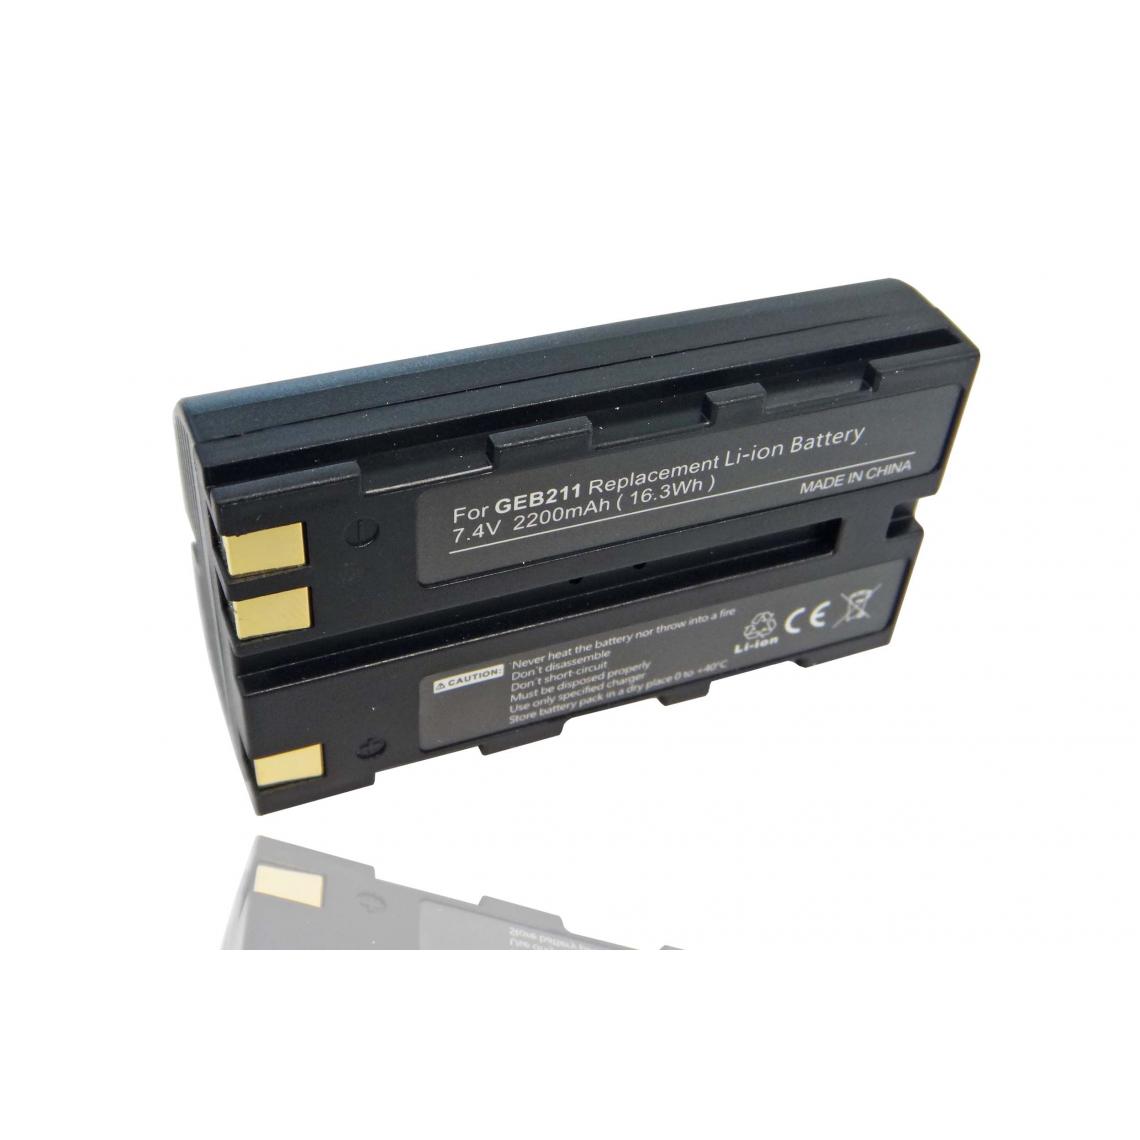 Vhbw - vhbw Batterie compatible avec Leica TCR805 Power, TPS1000 dispositif de mesure laser, outil de mesure (2200mAh, 7,4V, Li-ion) - Piles rechargeables